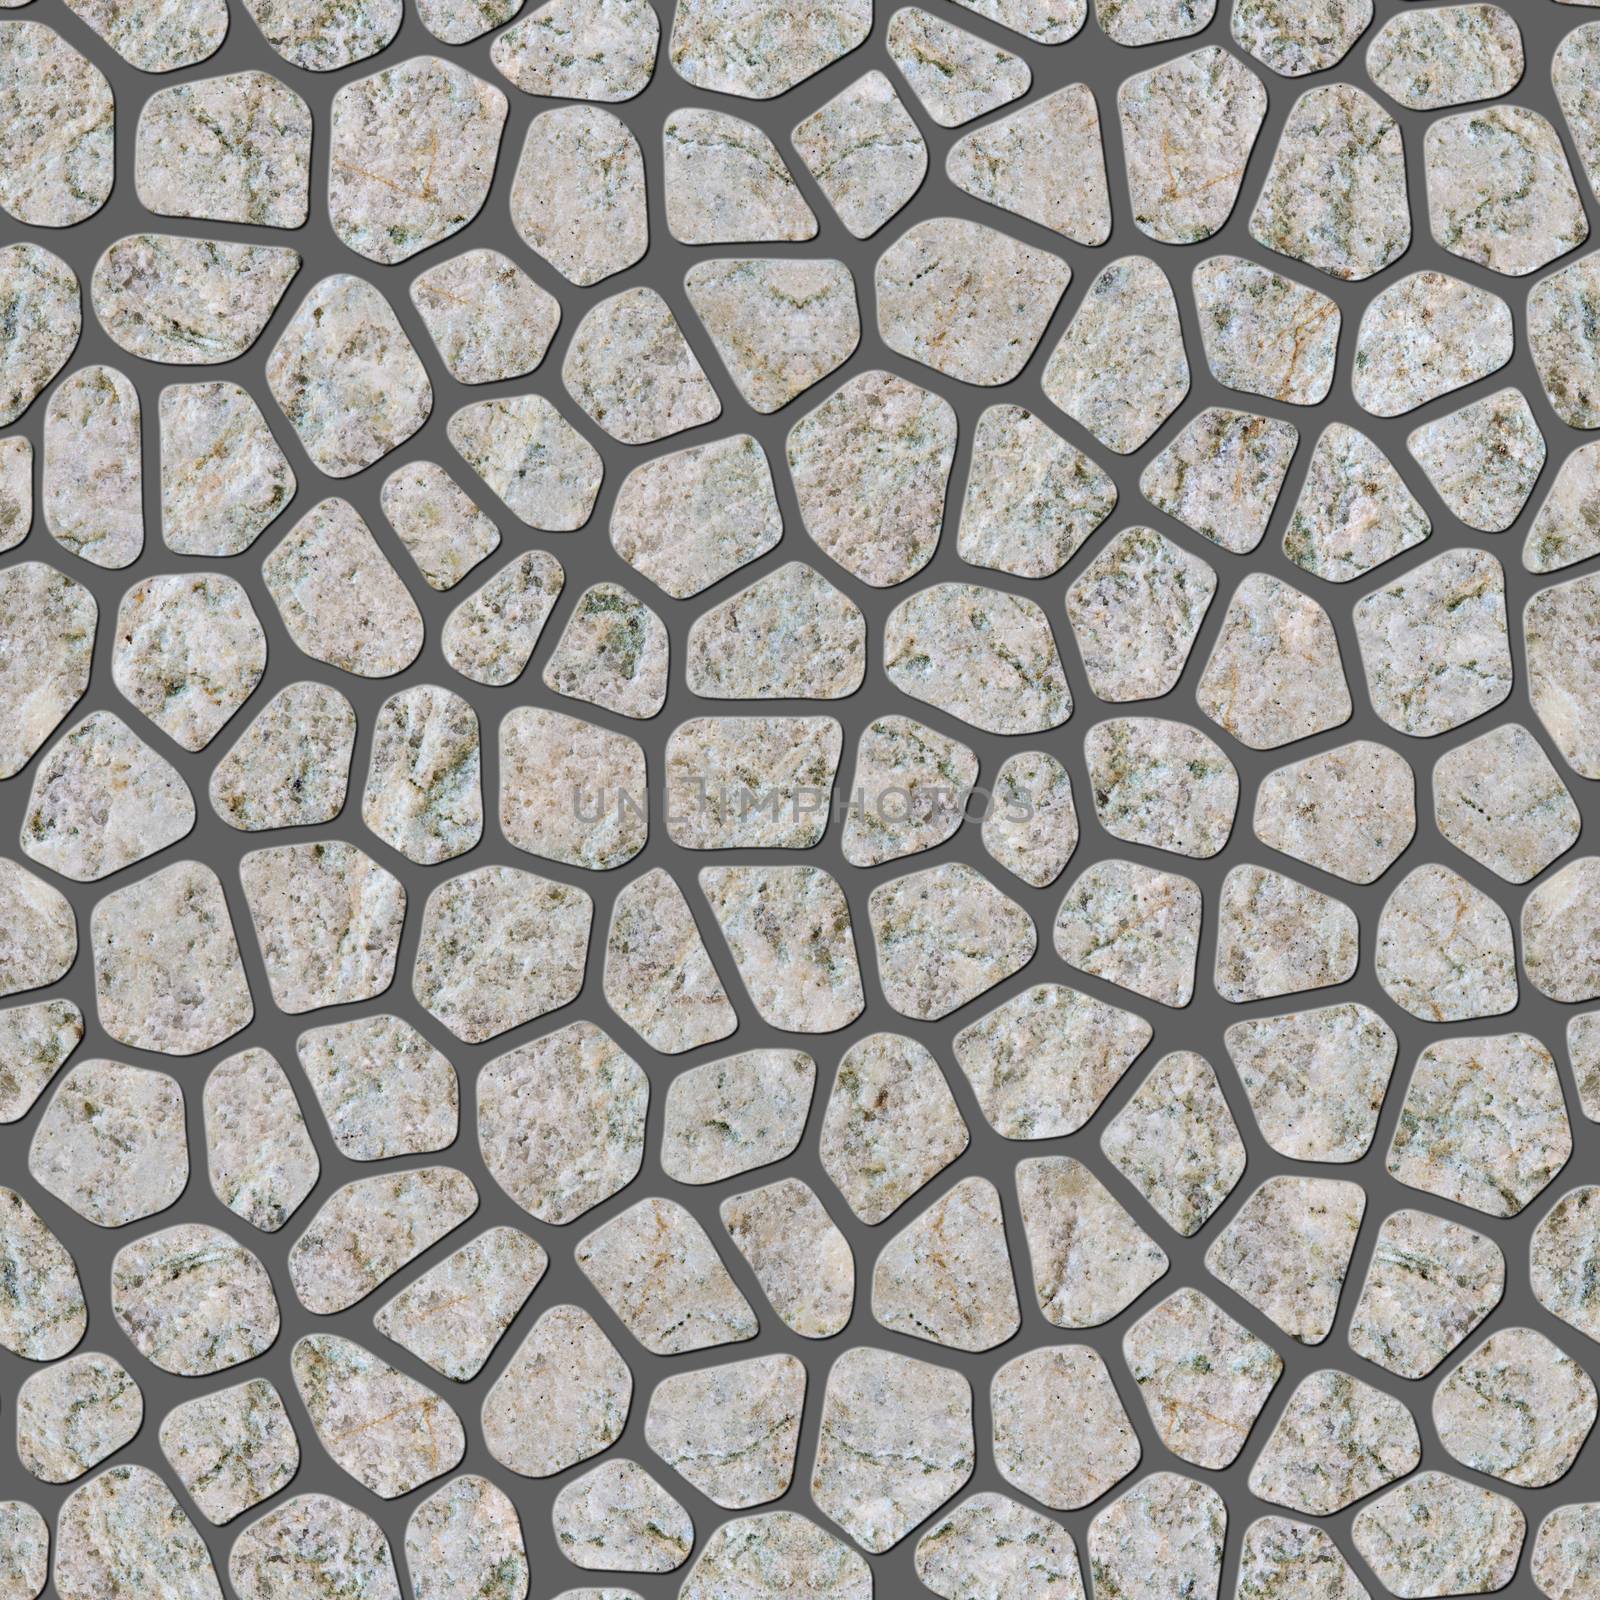 Seamless mosaic texture. Mosaic of natural stones.